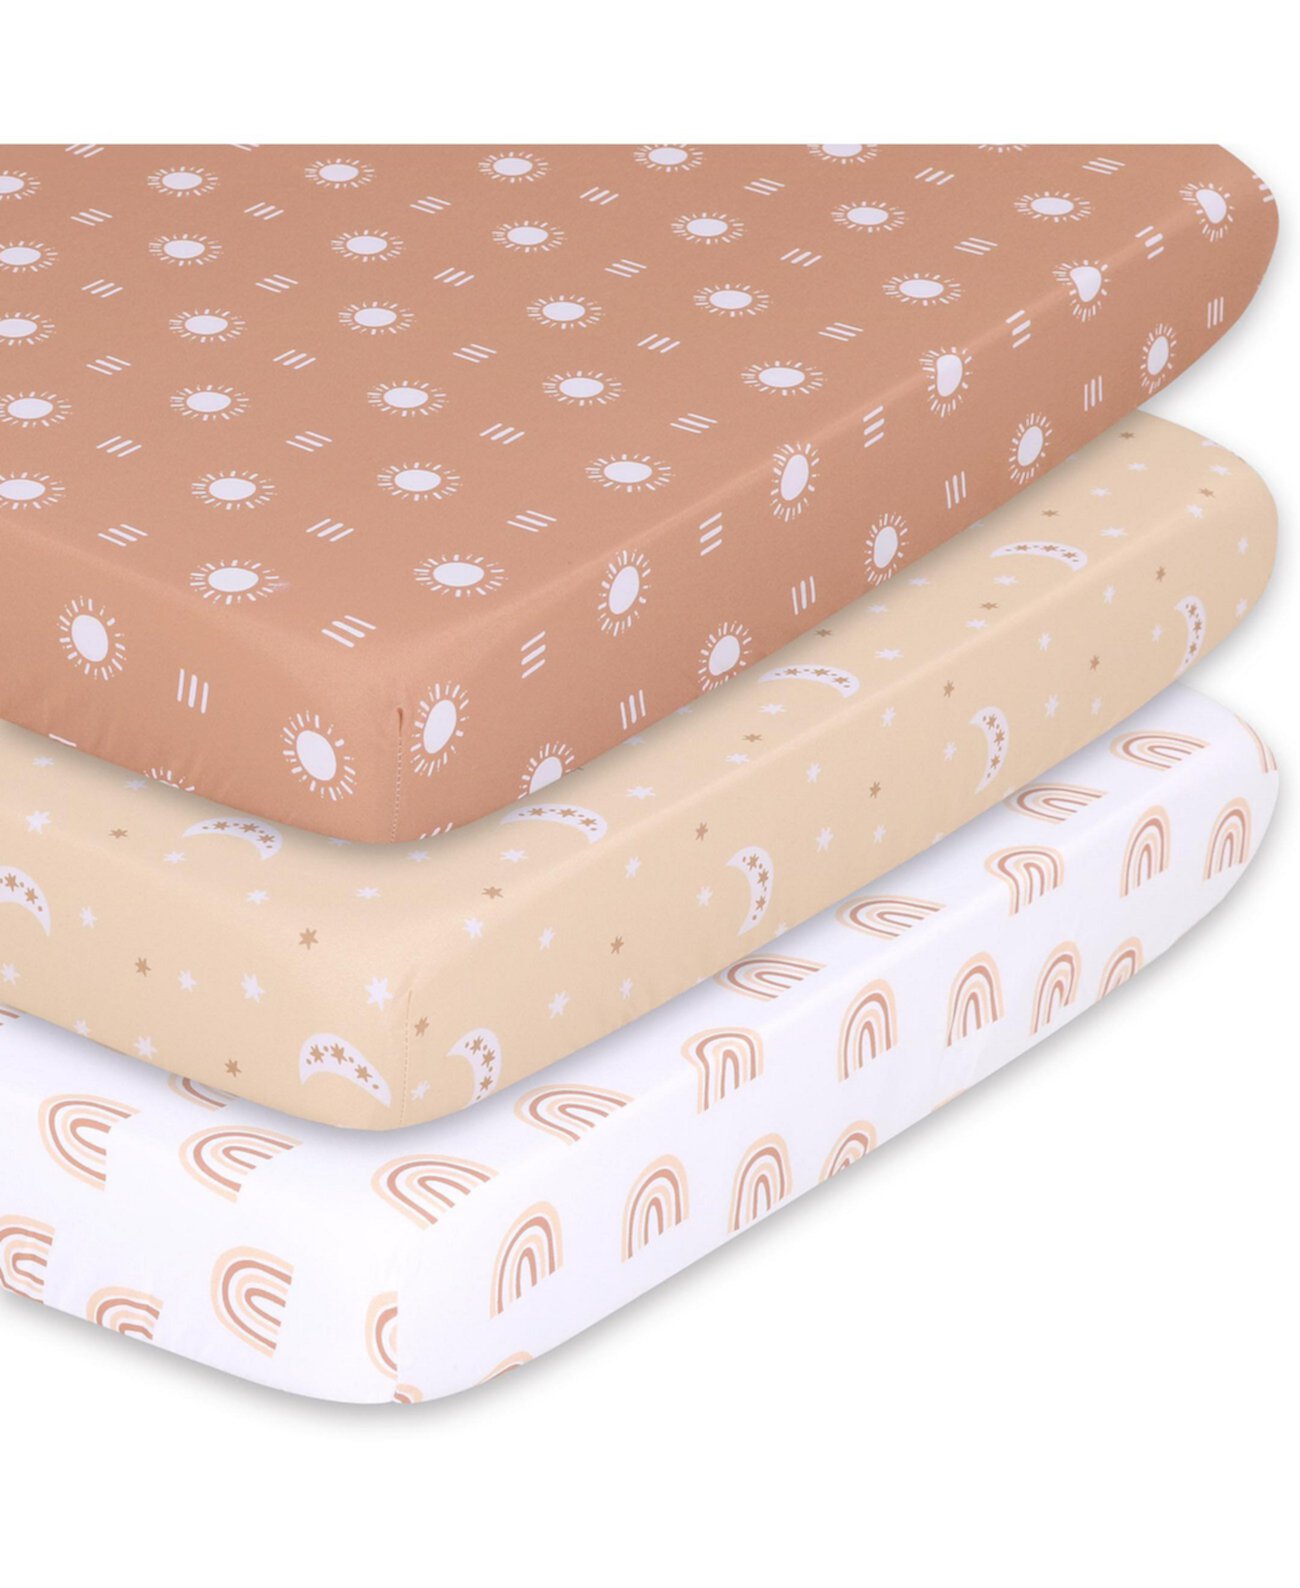 Pack n Play, мини-кроватка, переносная кроватка или приспособленные простыни для детской кроватки для девочки или мальчика, набор из 3 упаковок, глина, ржавчина и белый бохо The Peanutshell